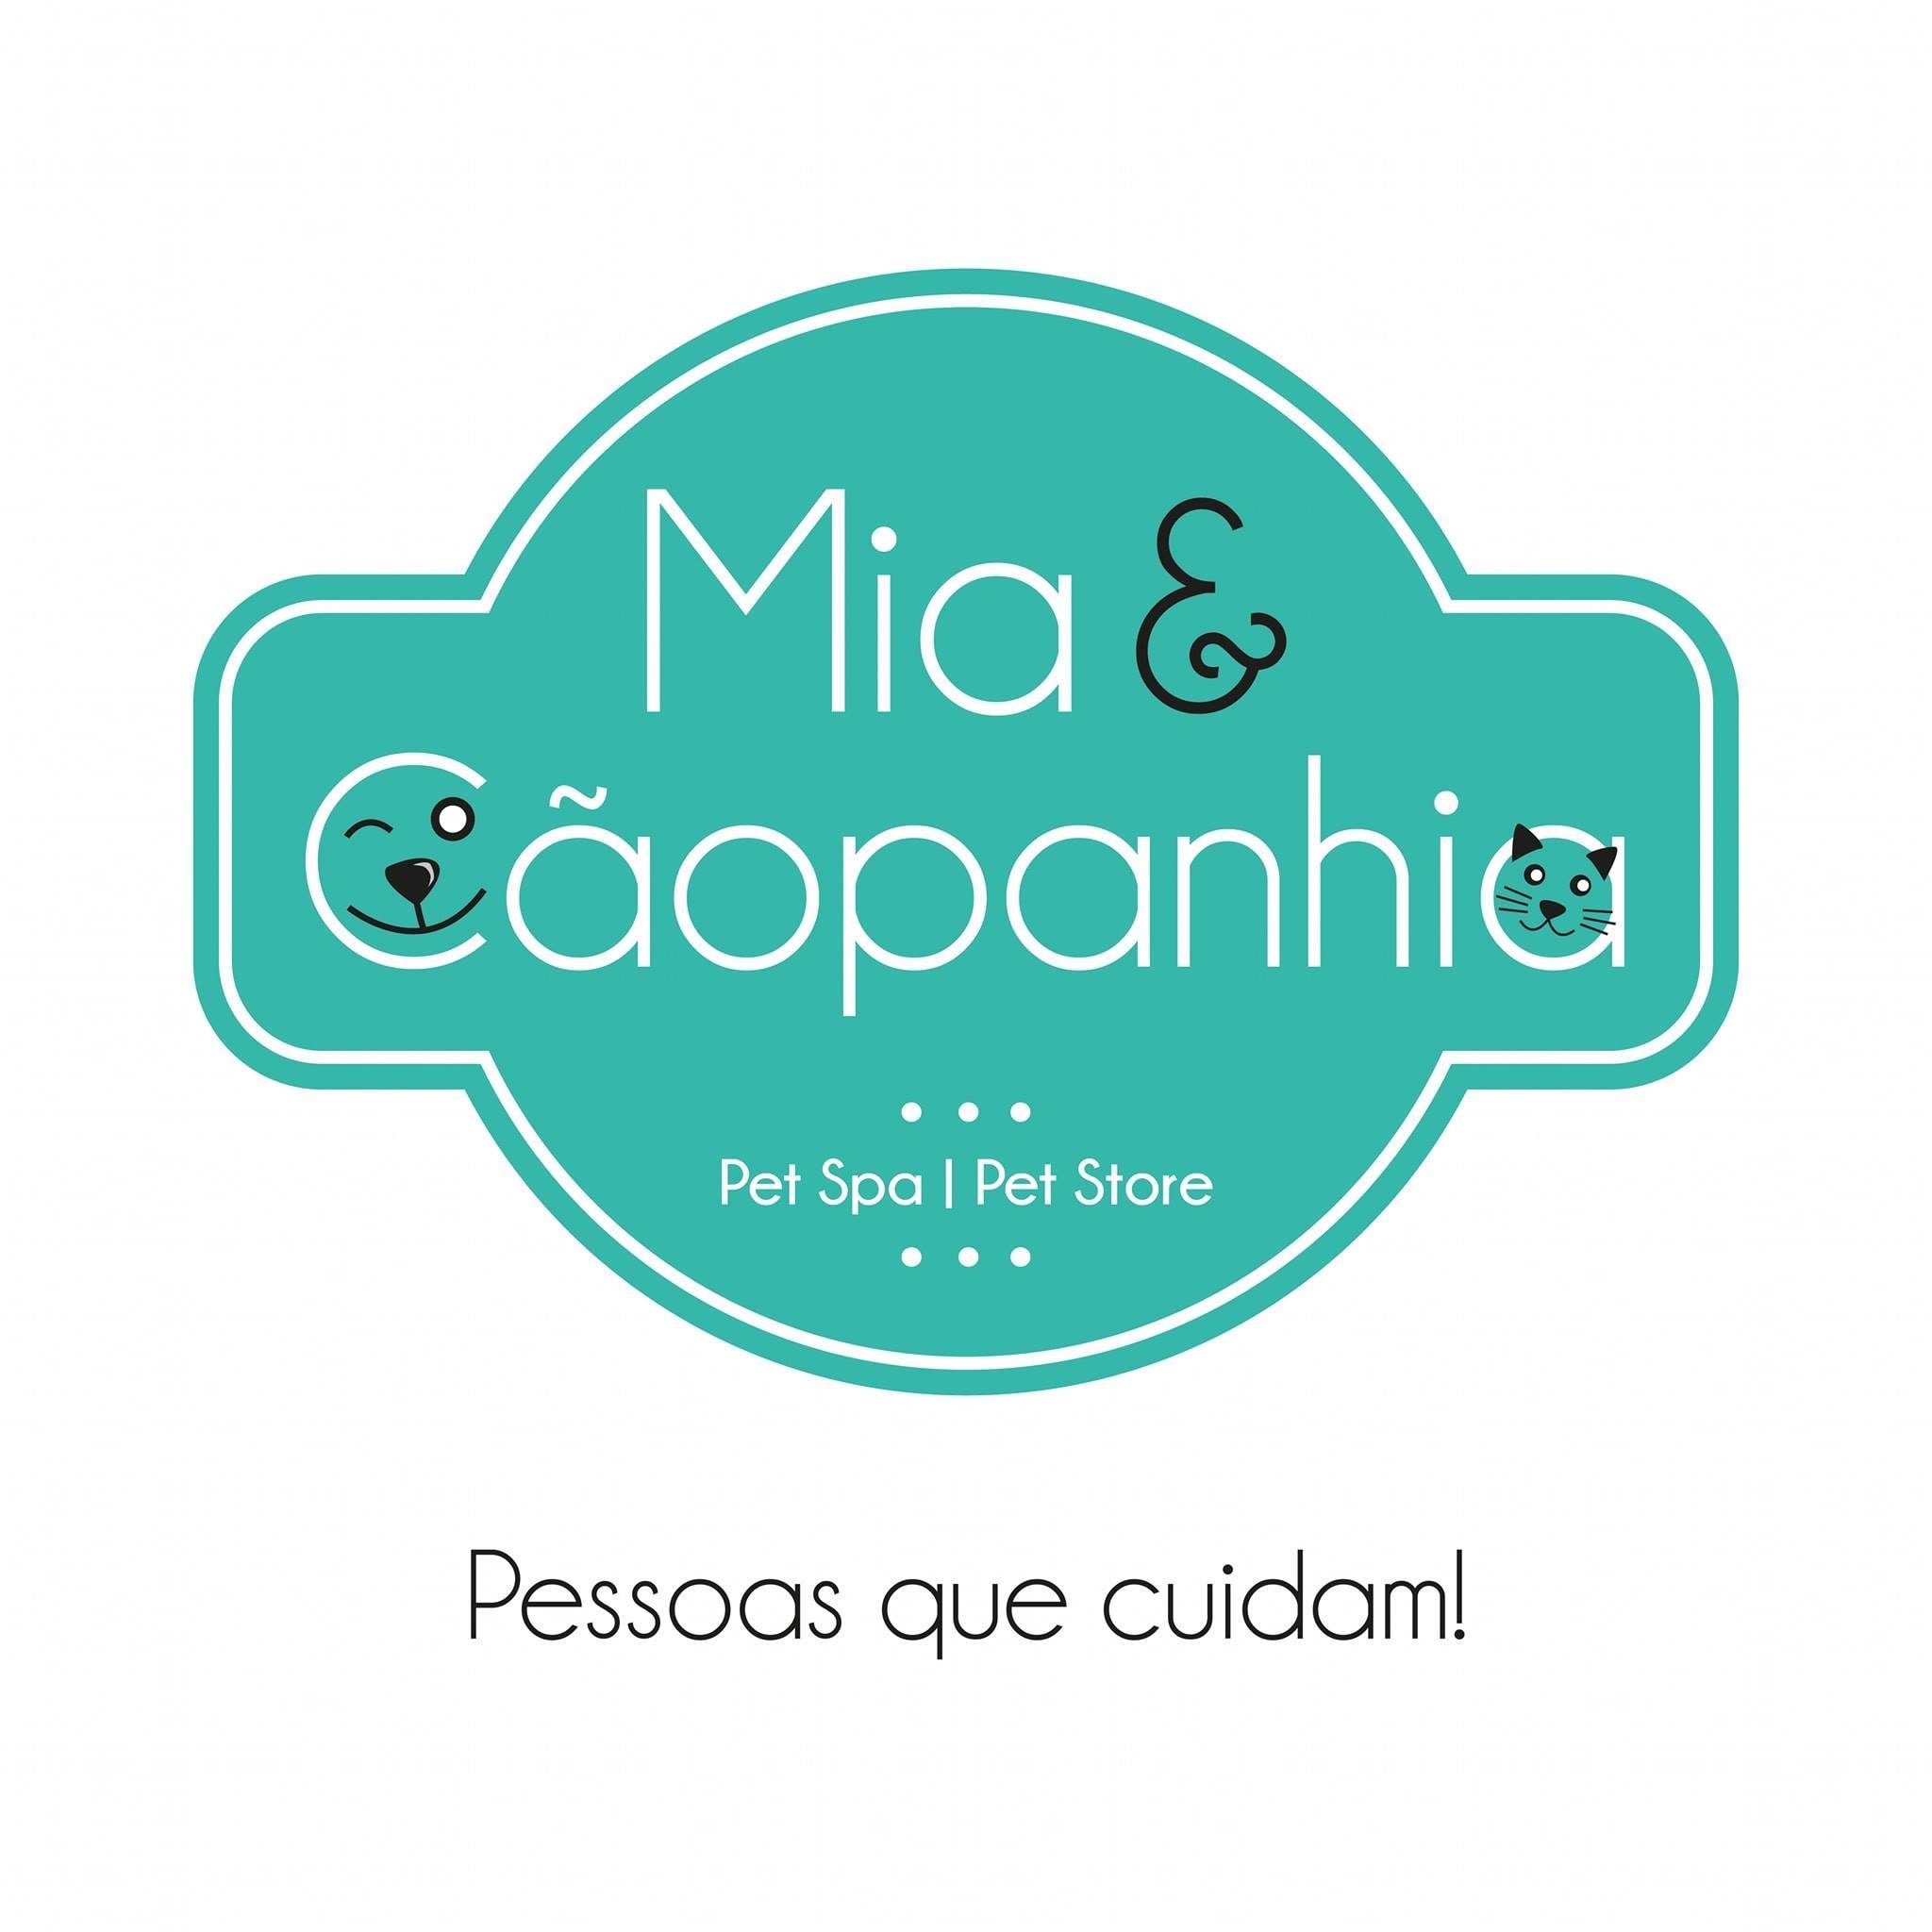 Mia & Cãopanhia - Pet Spa